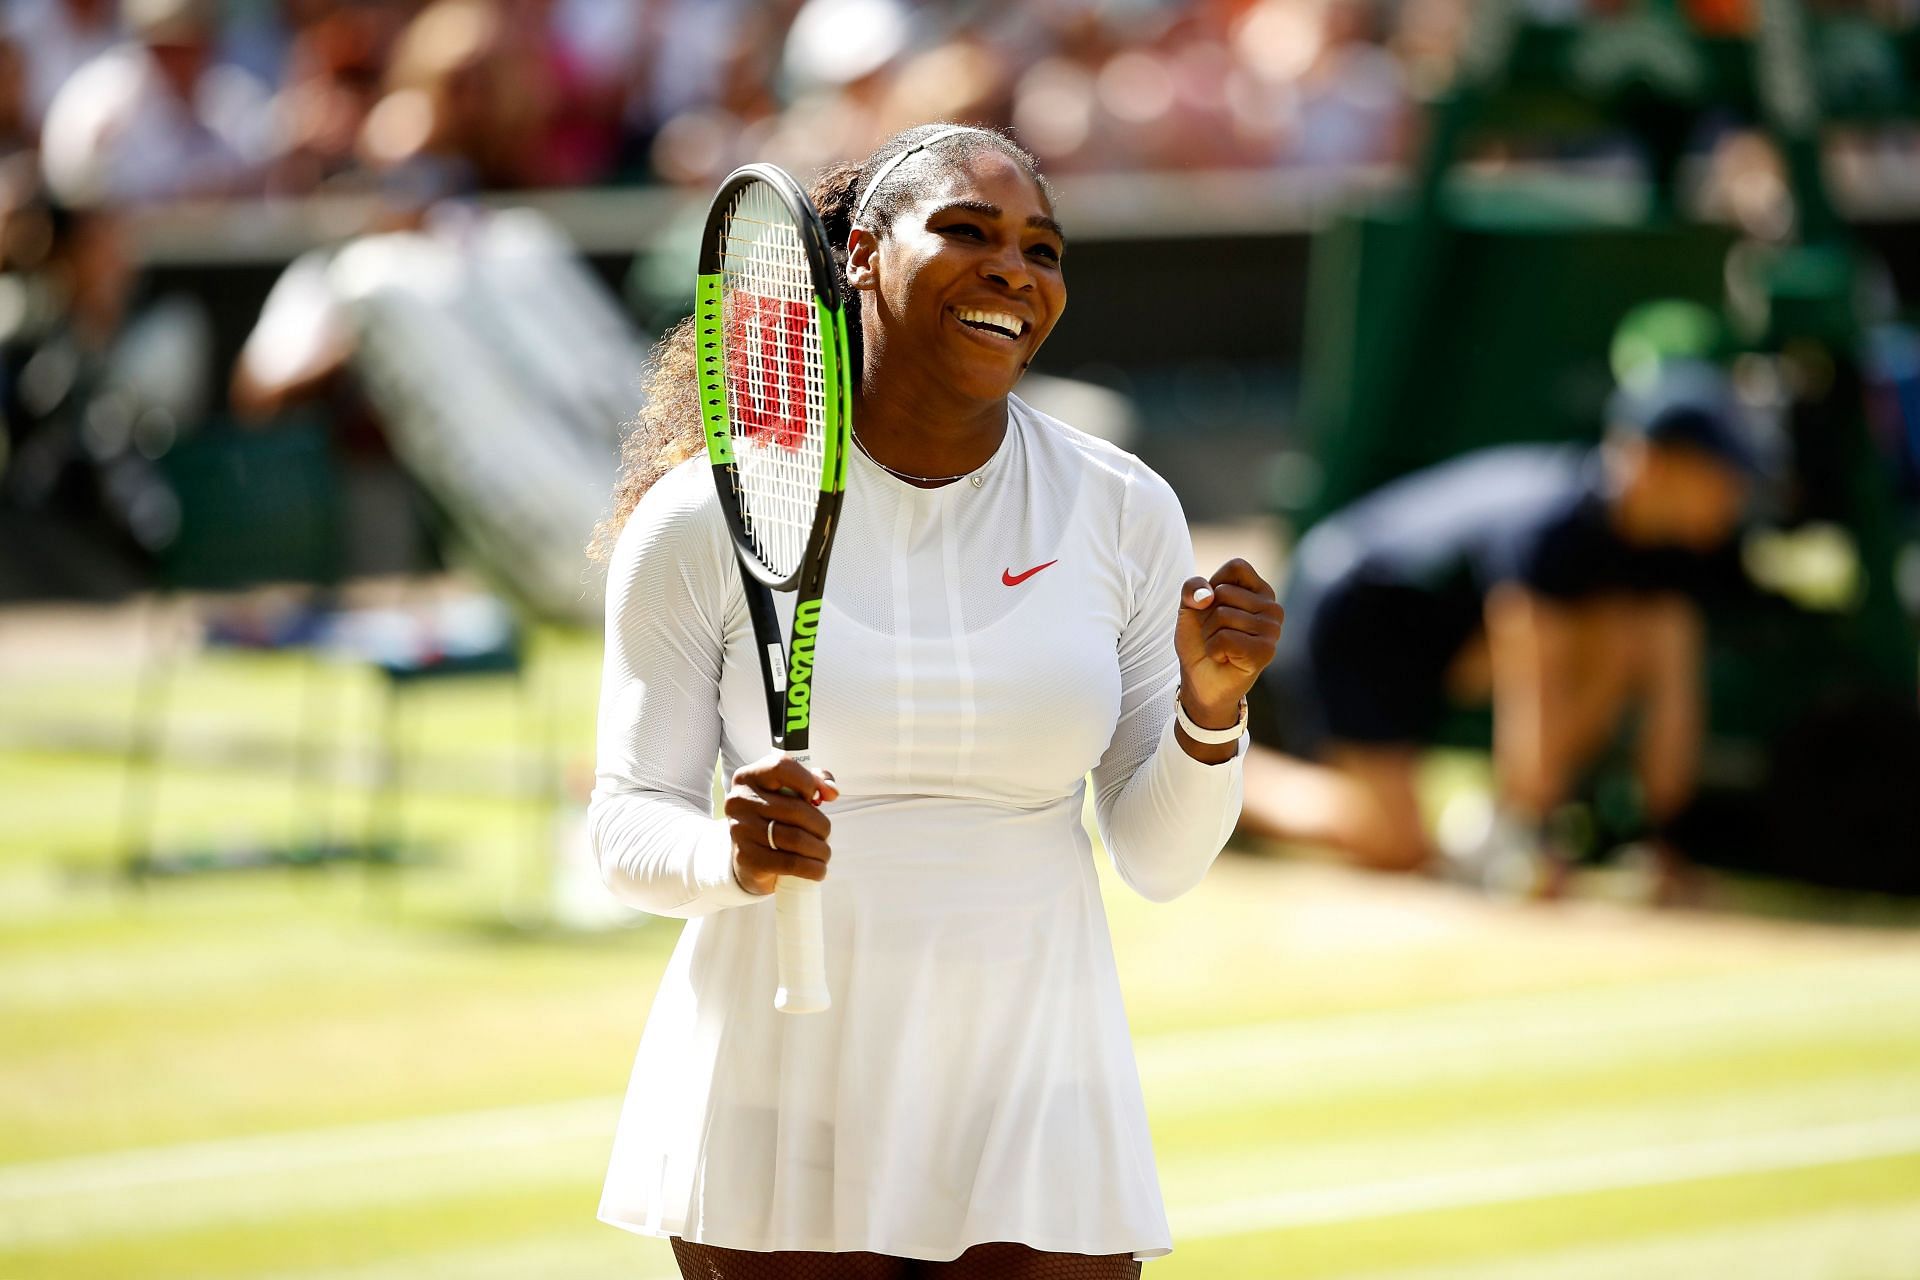 Serena Williams at the Wimbledon 2018 Championships